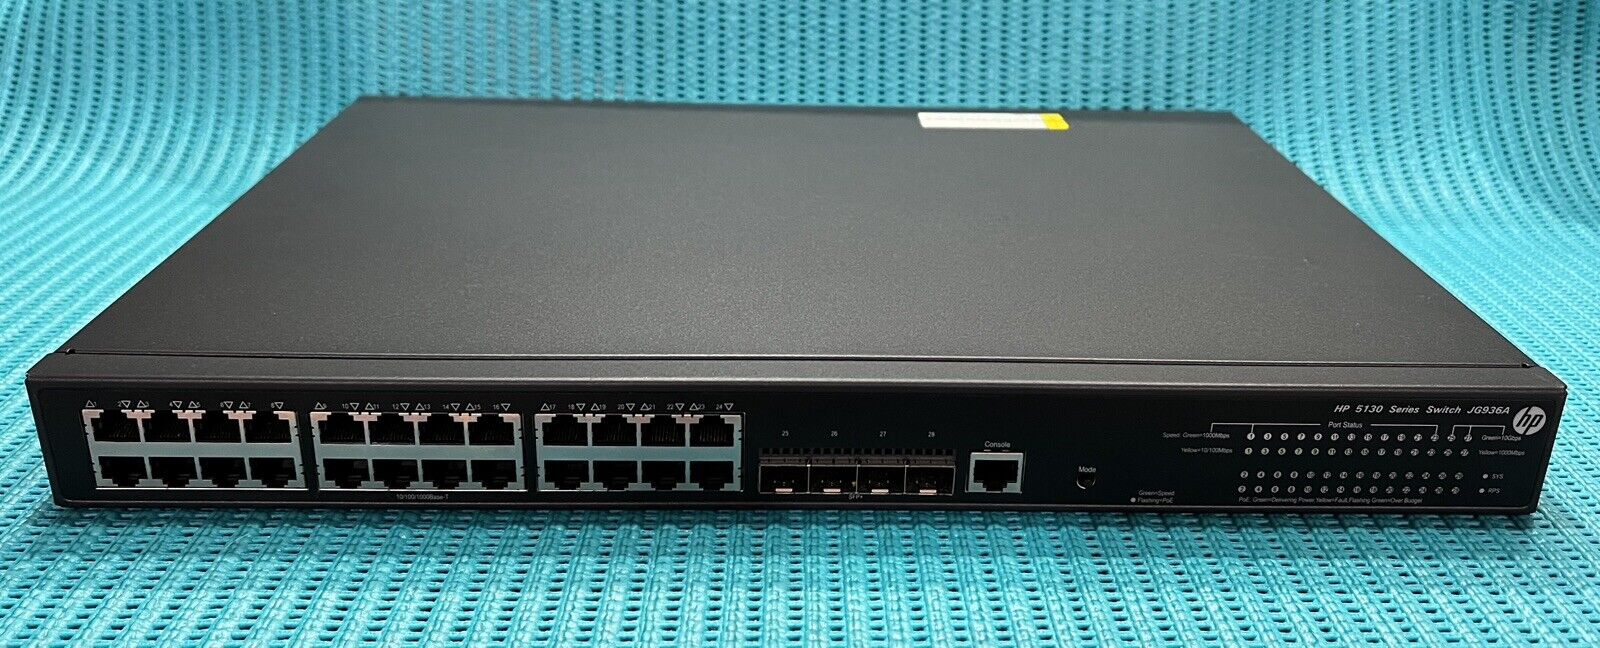 HP 5130-24G-PoE+-4SFP+ El Network switch . Open box.